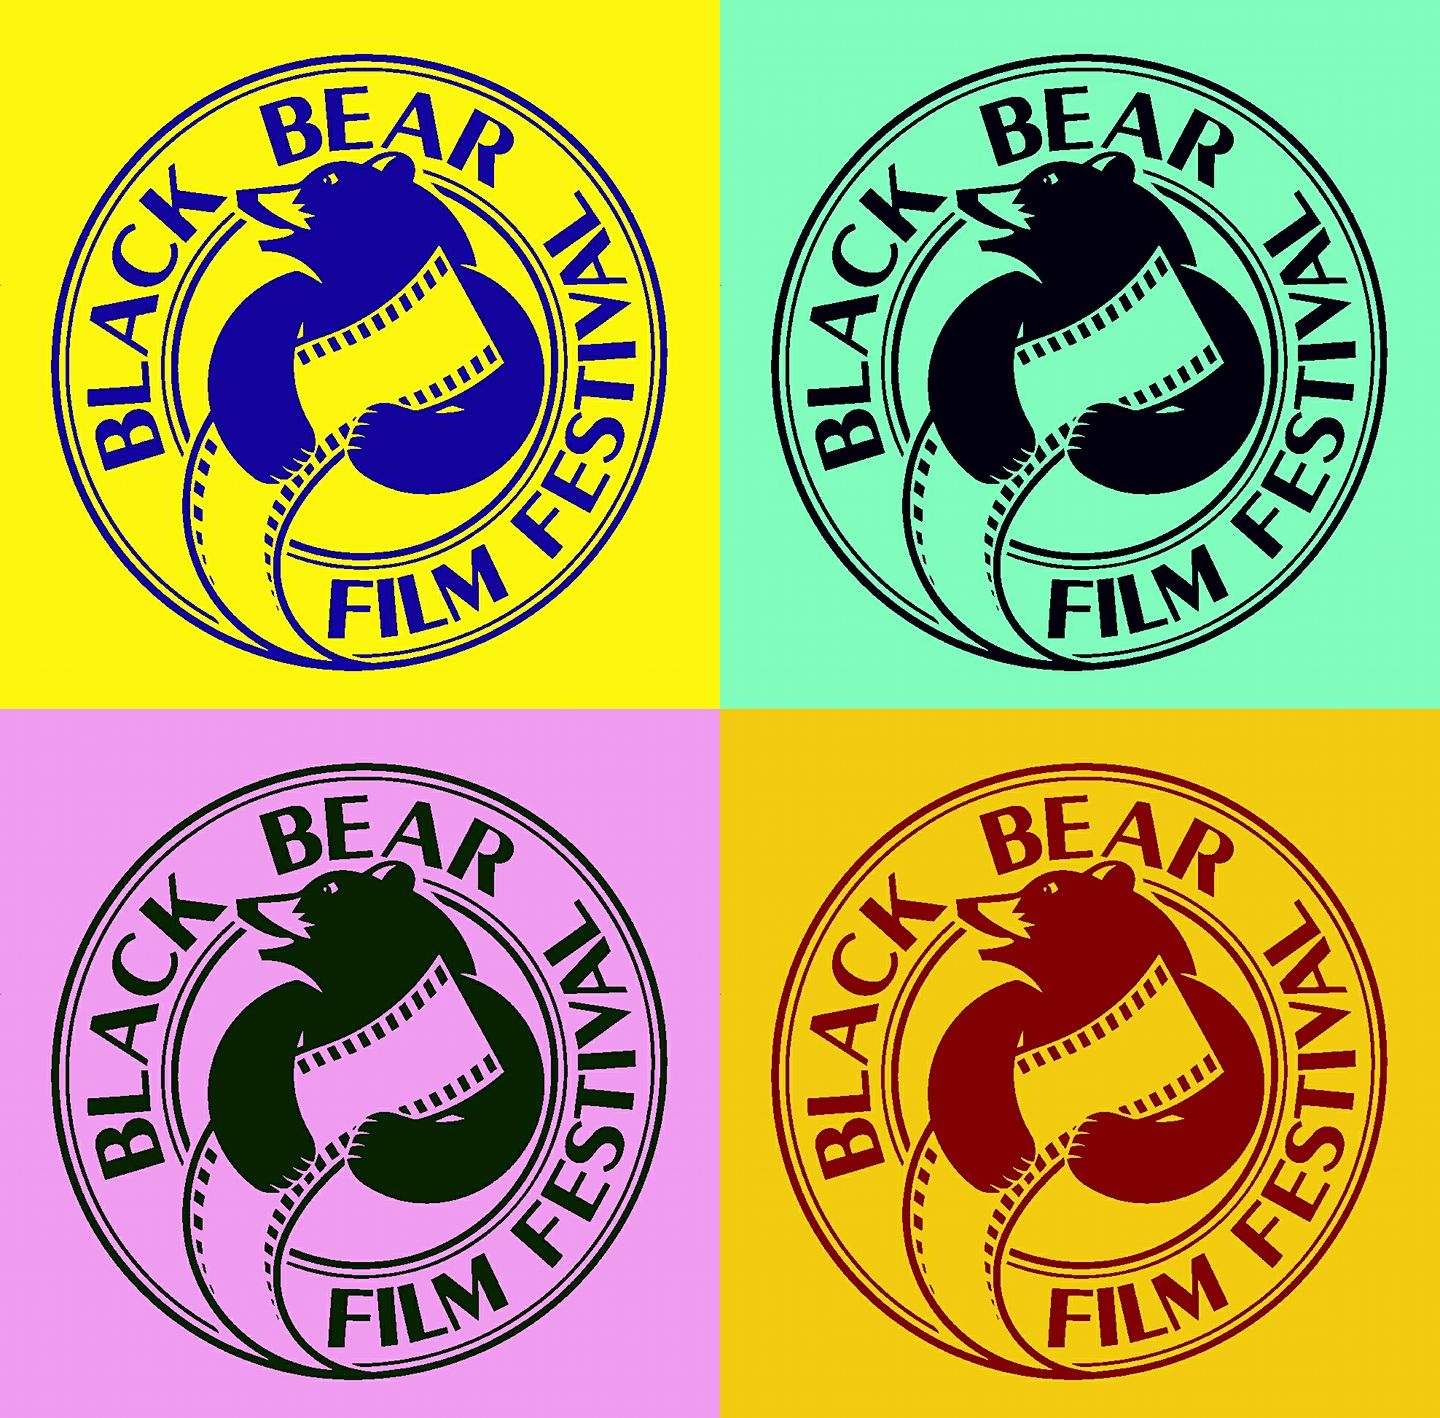 Black Bear Film Festival